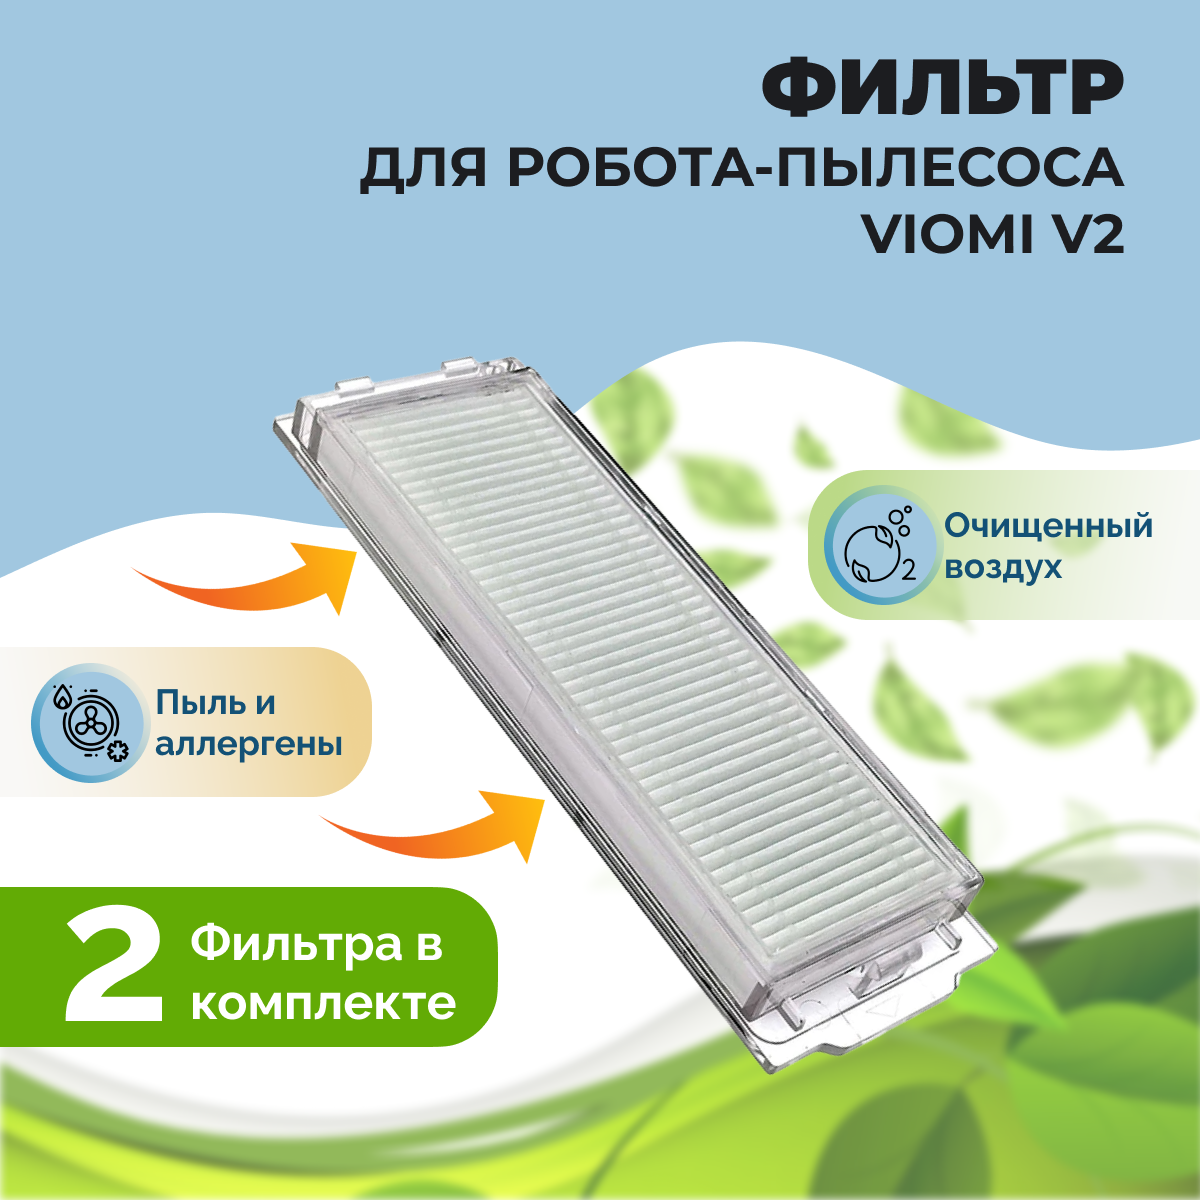 Фильтры для робота-пылесоса Viomi V2, 2 штуки 558508